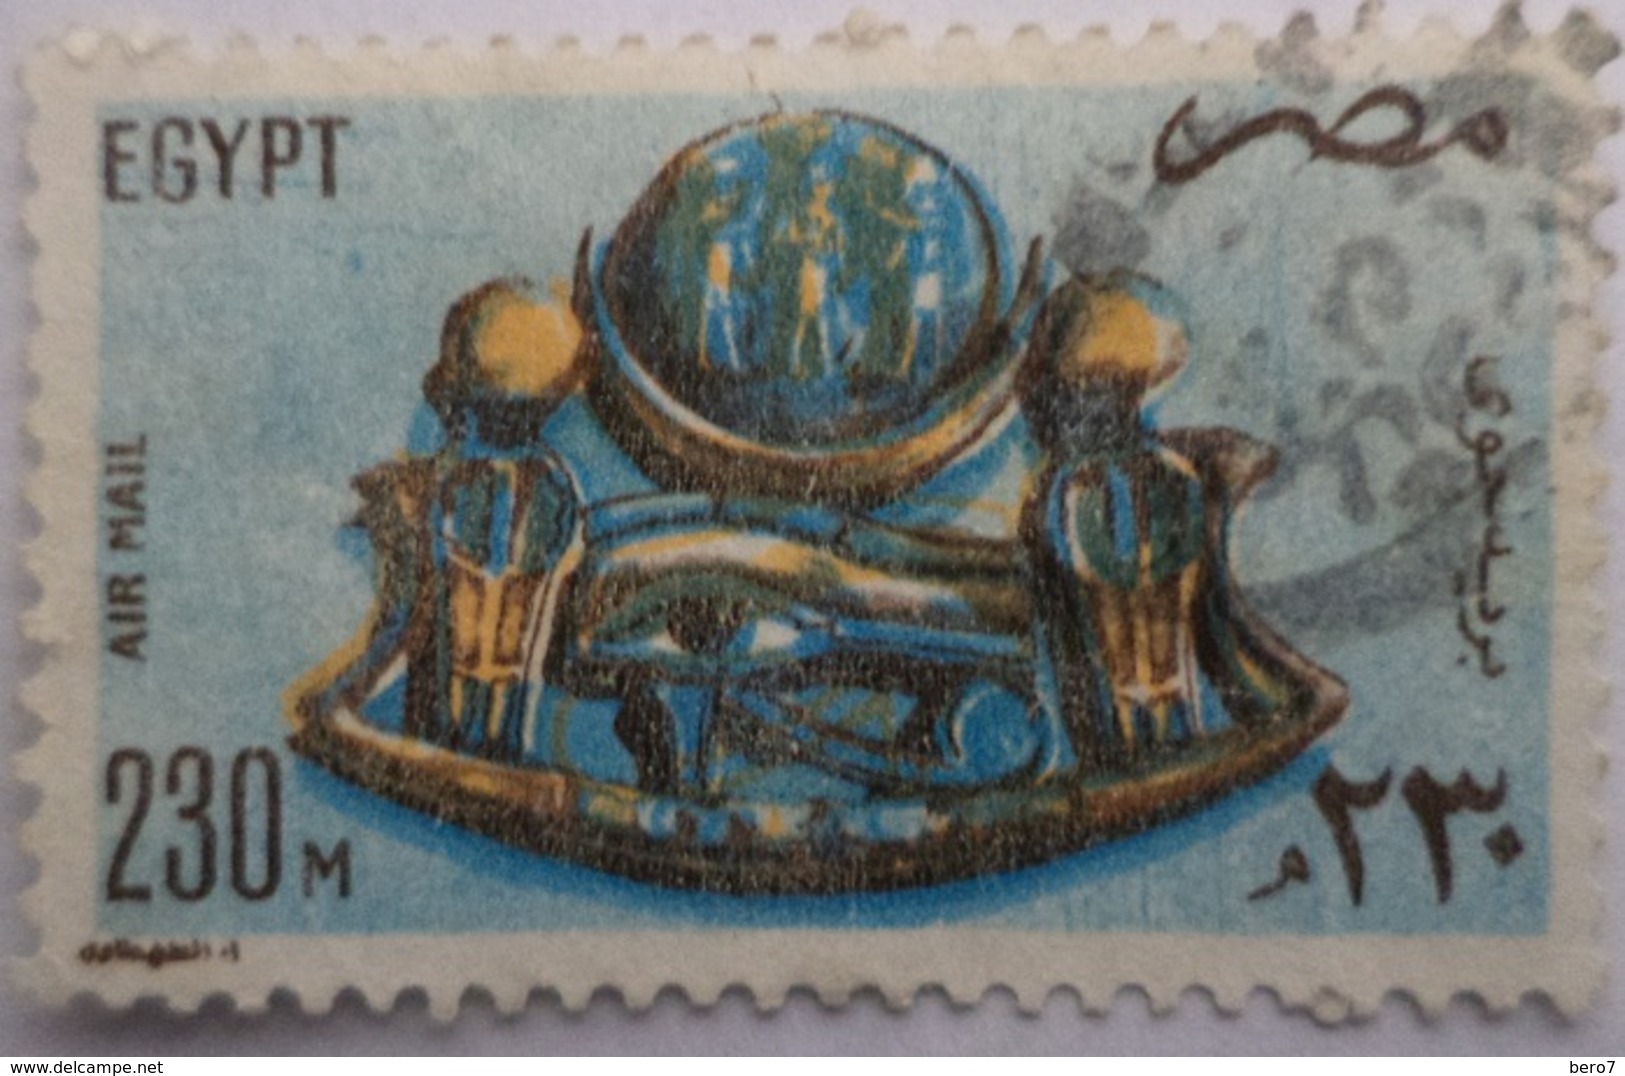 EGYPT - 1981- Old Egyptian Piece Of Jewelry- Air Mail -  (Egypte) (Egitto) (Ägypten) (Egipto) (Egypten) - Oblitérés